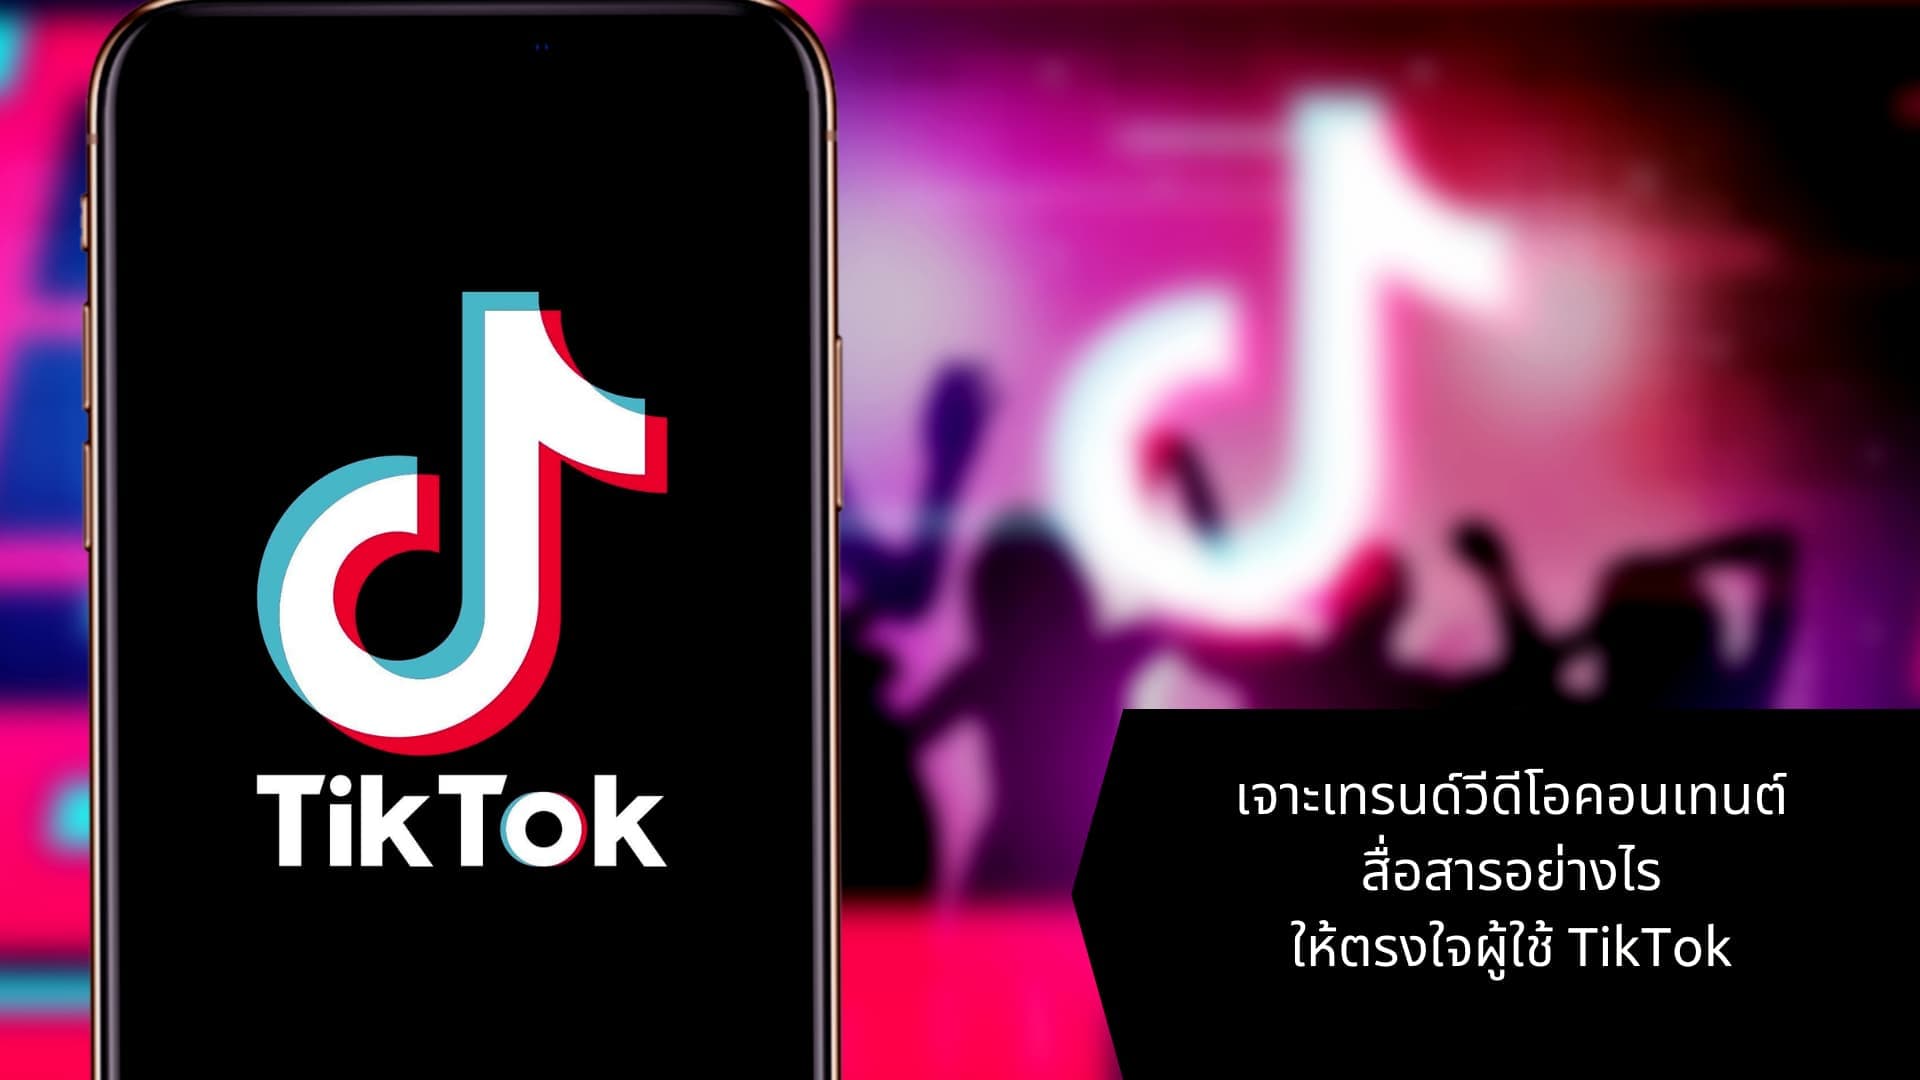 เจาะเทรนด์วีดีโอคอนเทนต์ สื่อสารอย่างไรให้ตรงใจผู้ใช้ TikTok